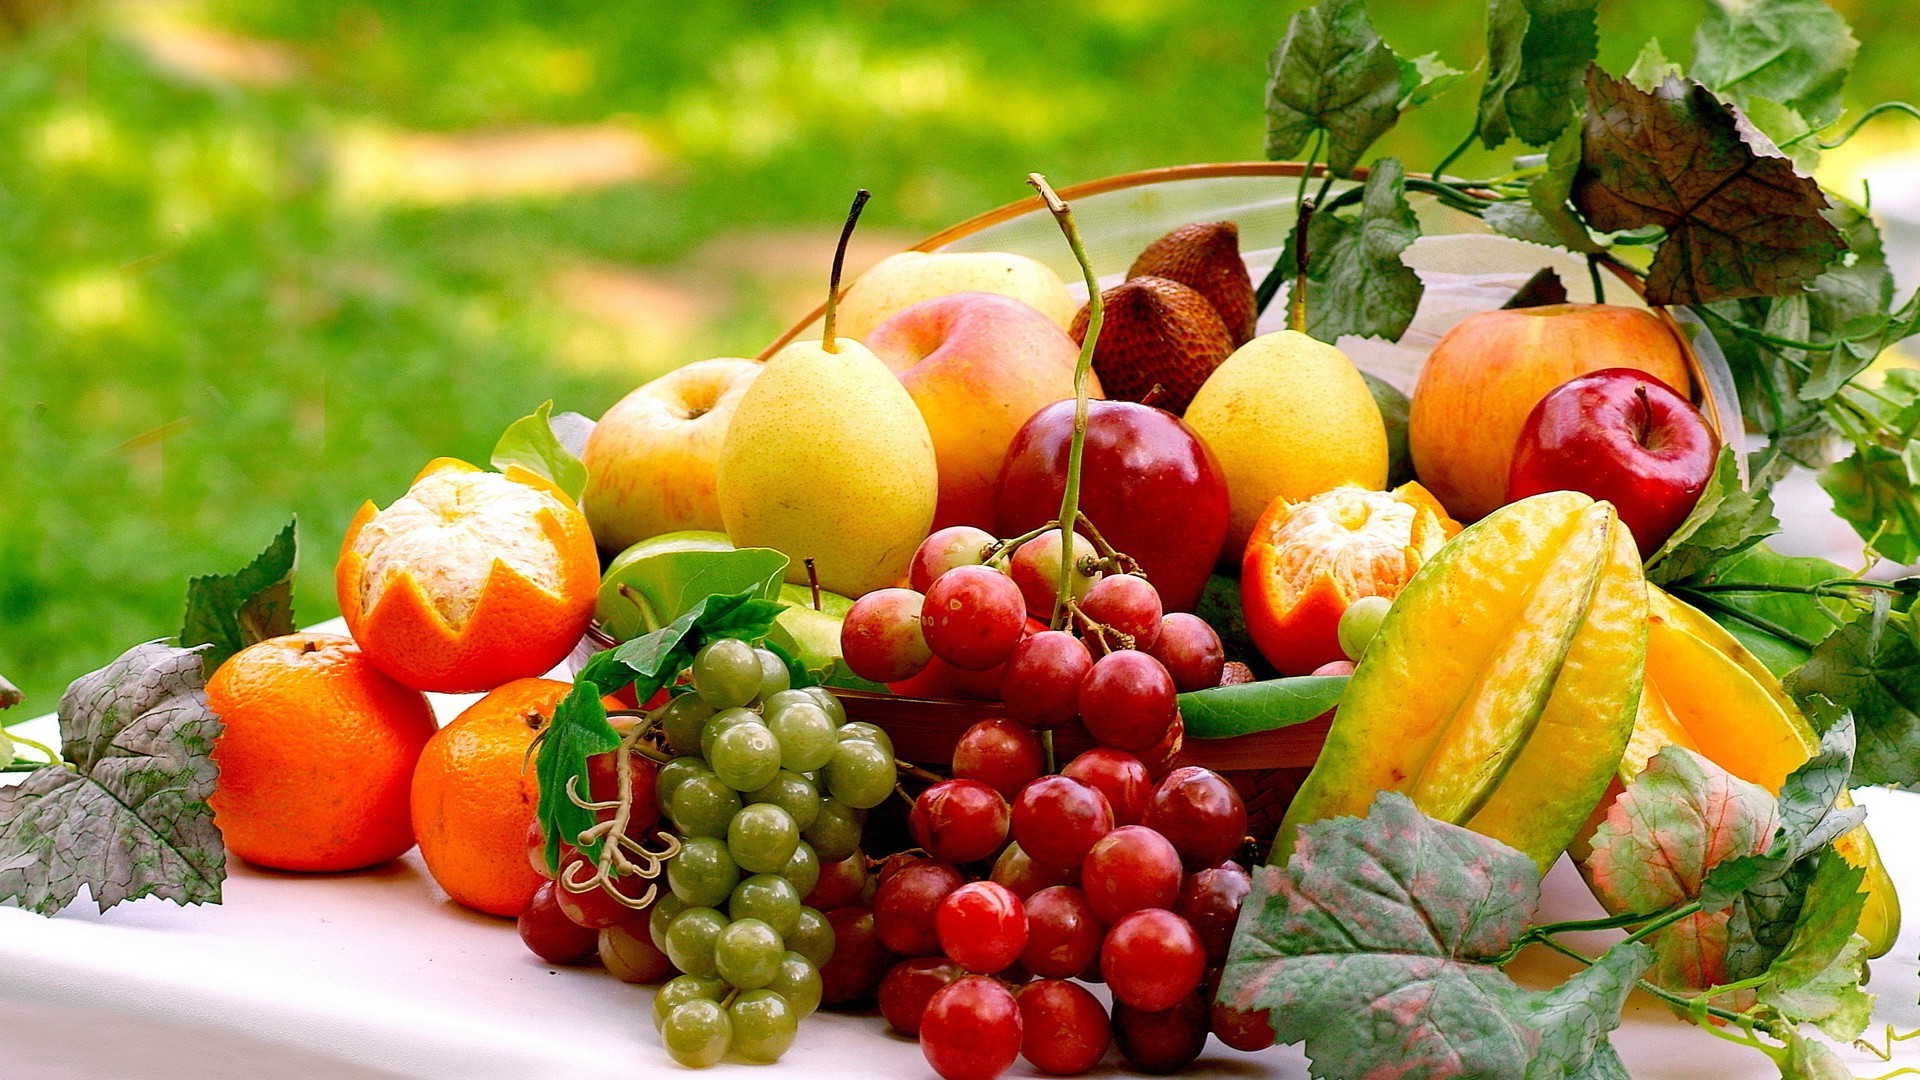 영양 벽지,자연 식품,현지 음식,음식,과일,야채